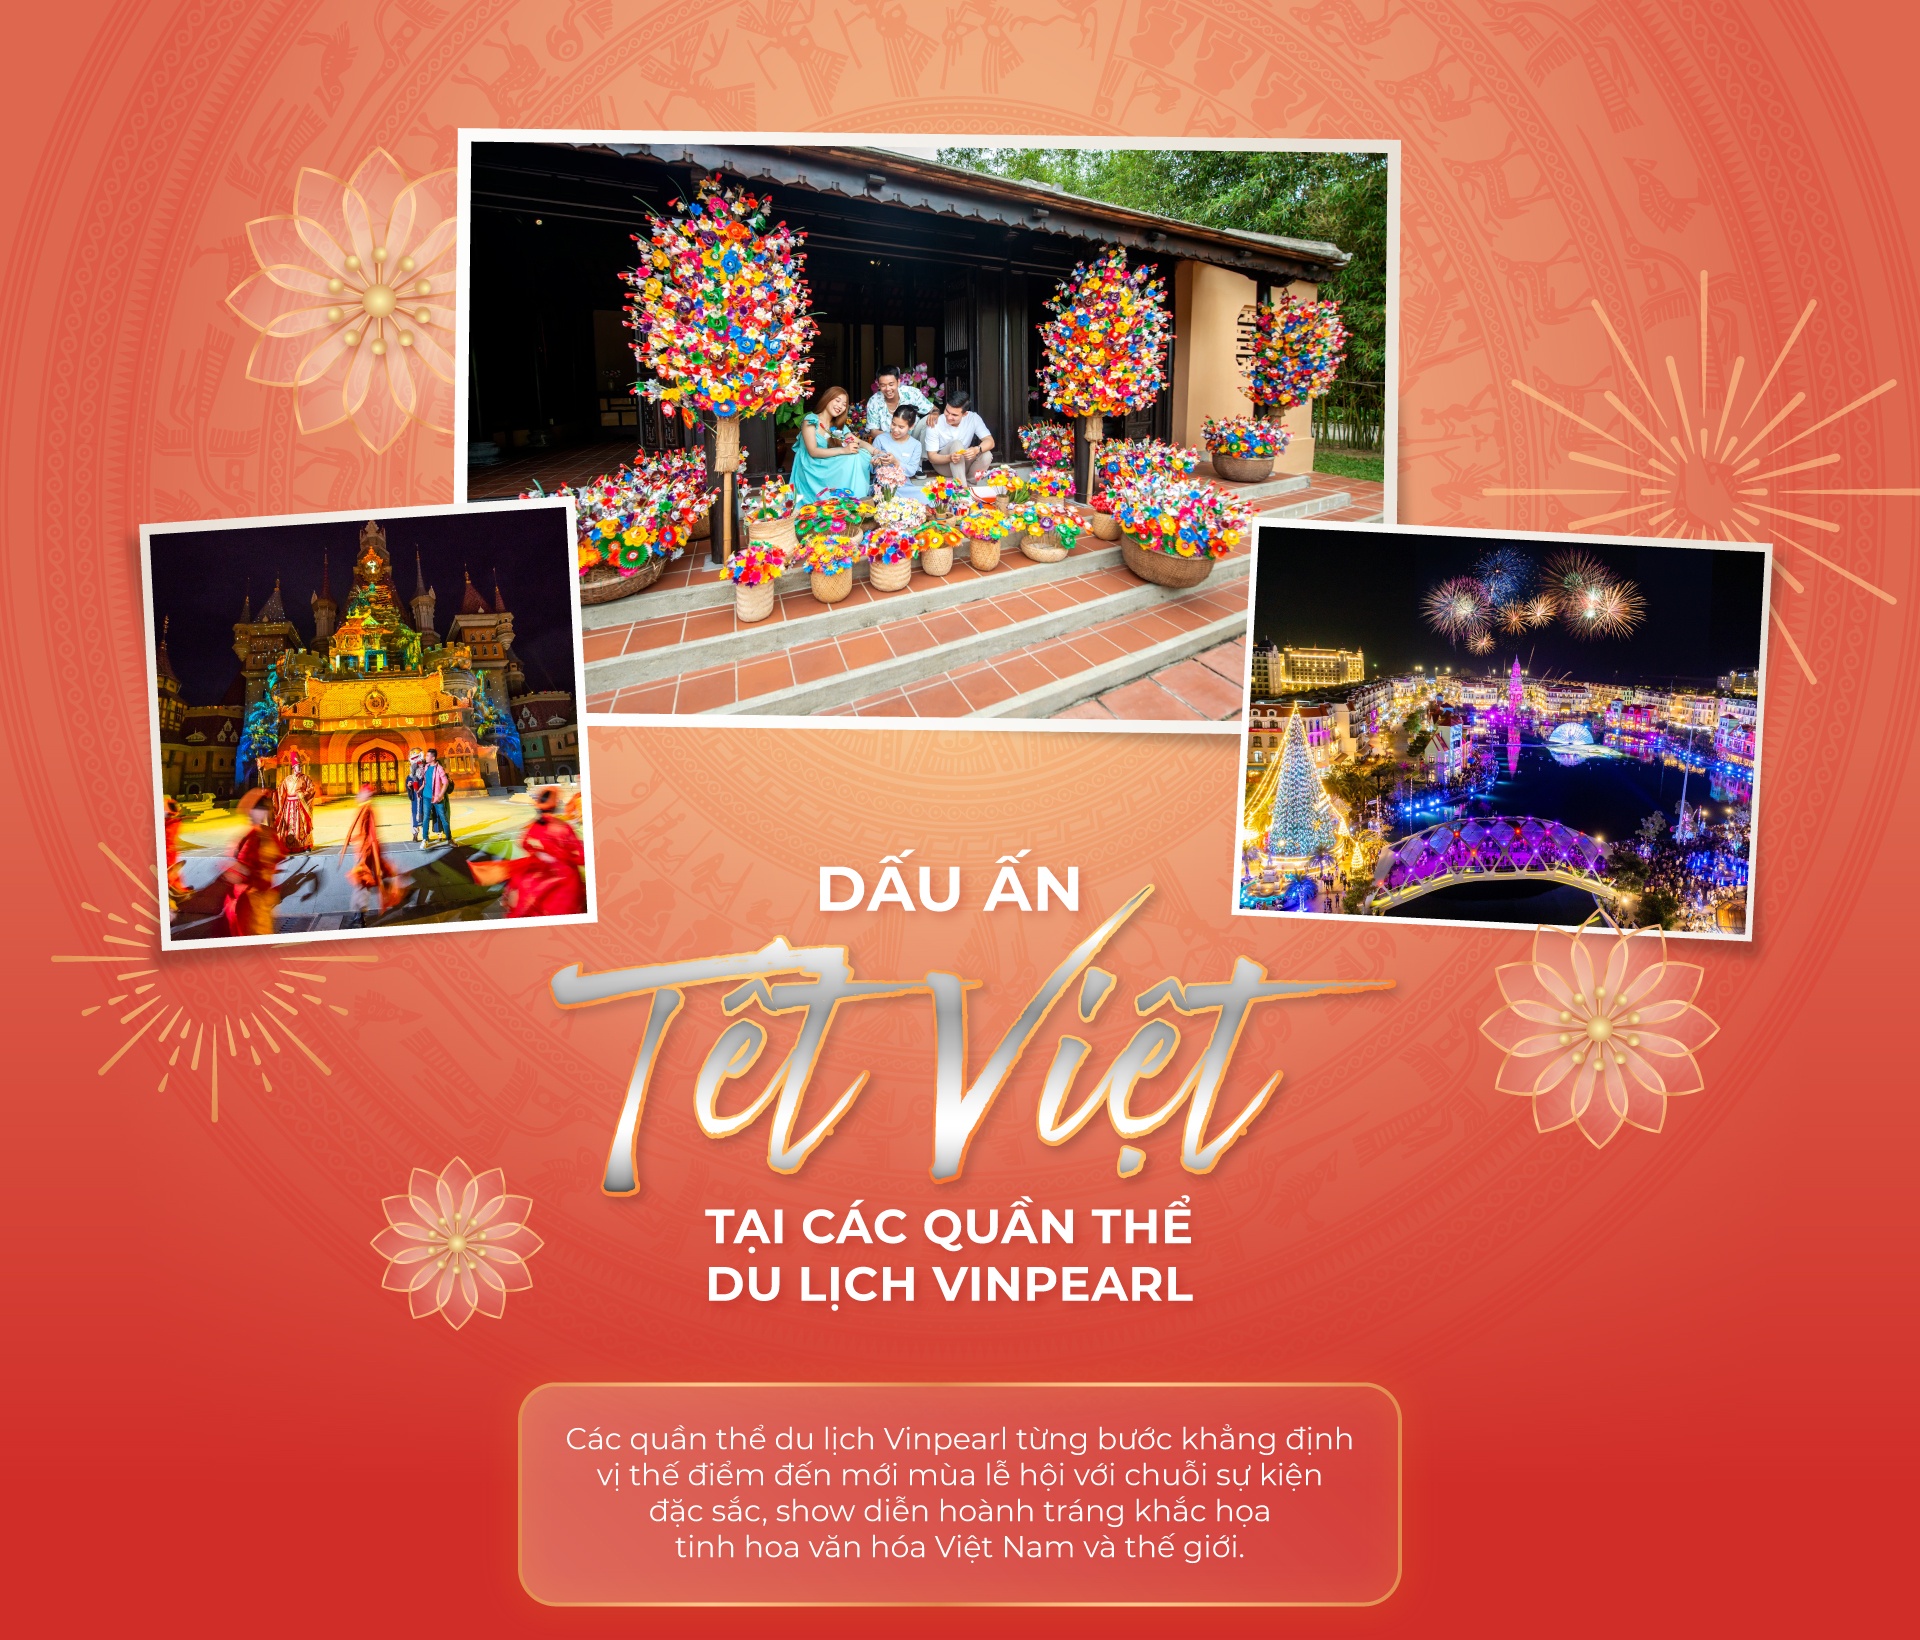 Phu Quoc United Center anh 1  - cover_desk_2 - Dấu ấn Tết Việt tại các quần thể du lịch Vinpearl